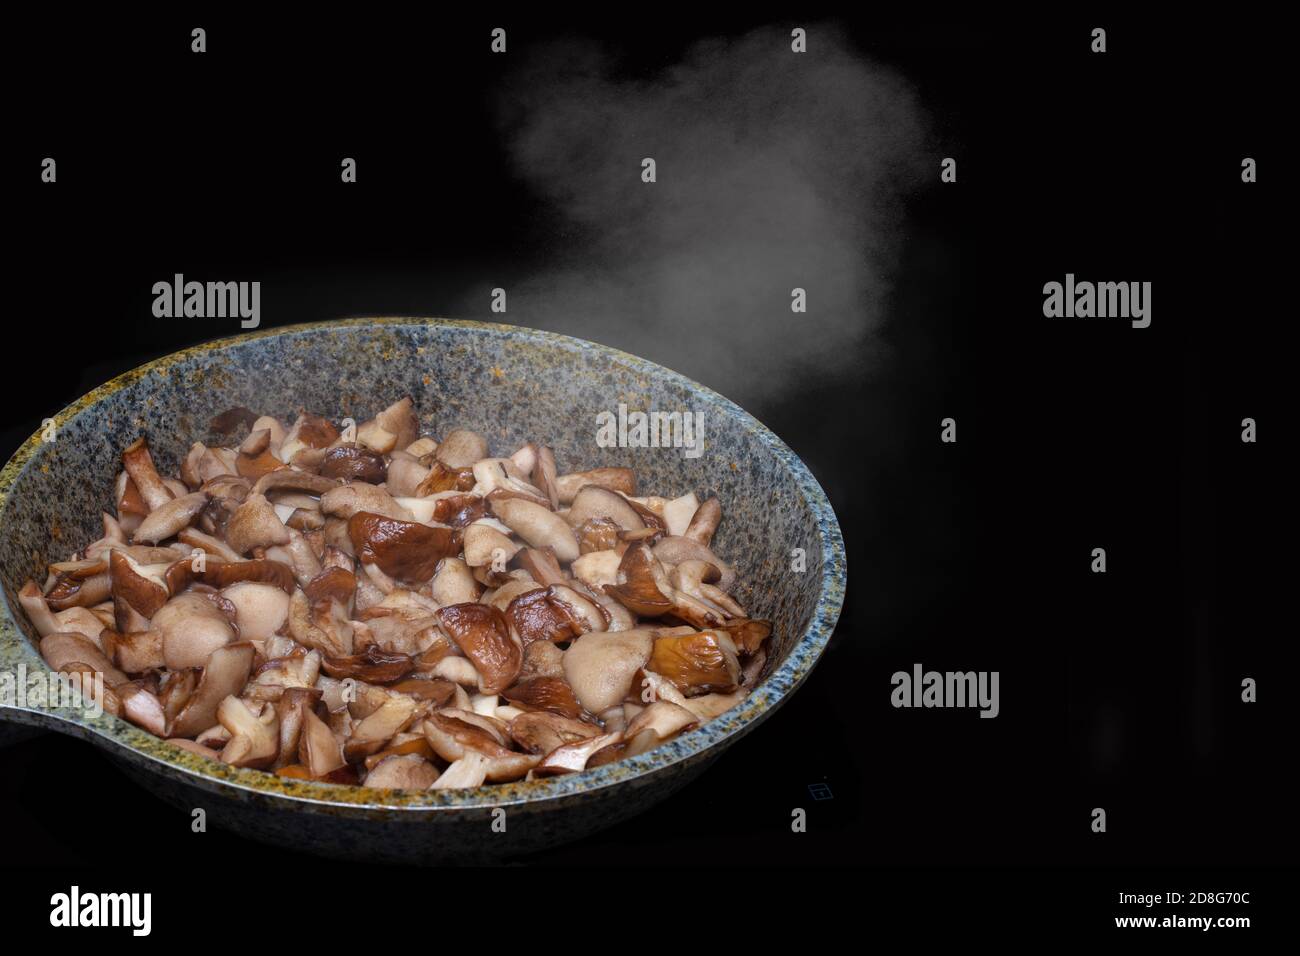 Primo piano di funghi fritti o stufati in una padella, il vapore sale da funghi caldi, isolati su fondo nero Foto Stock